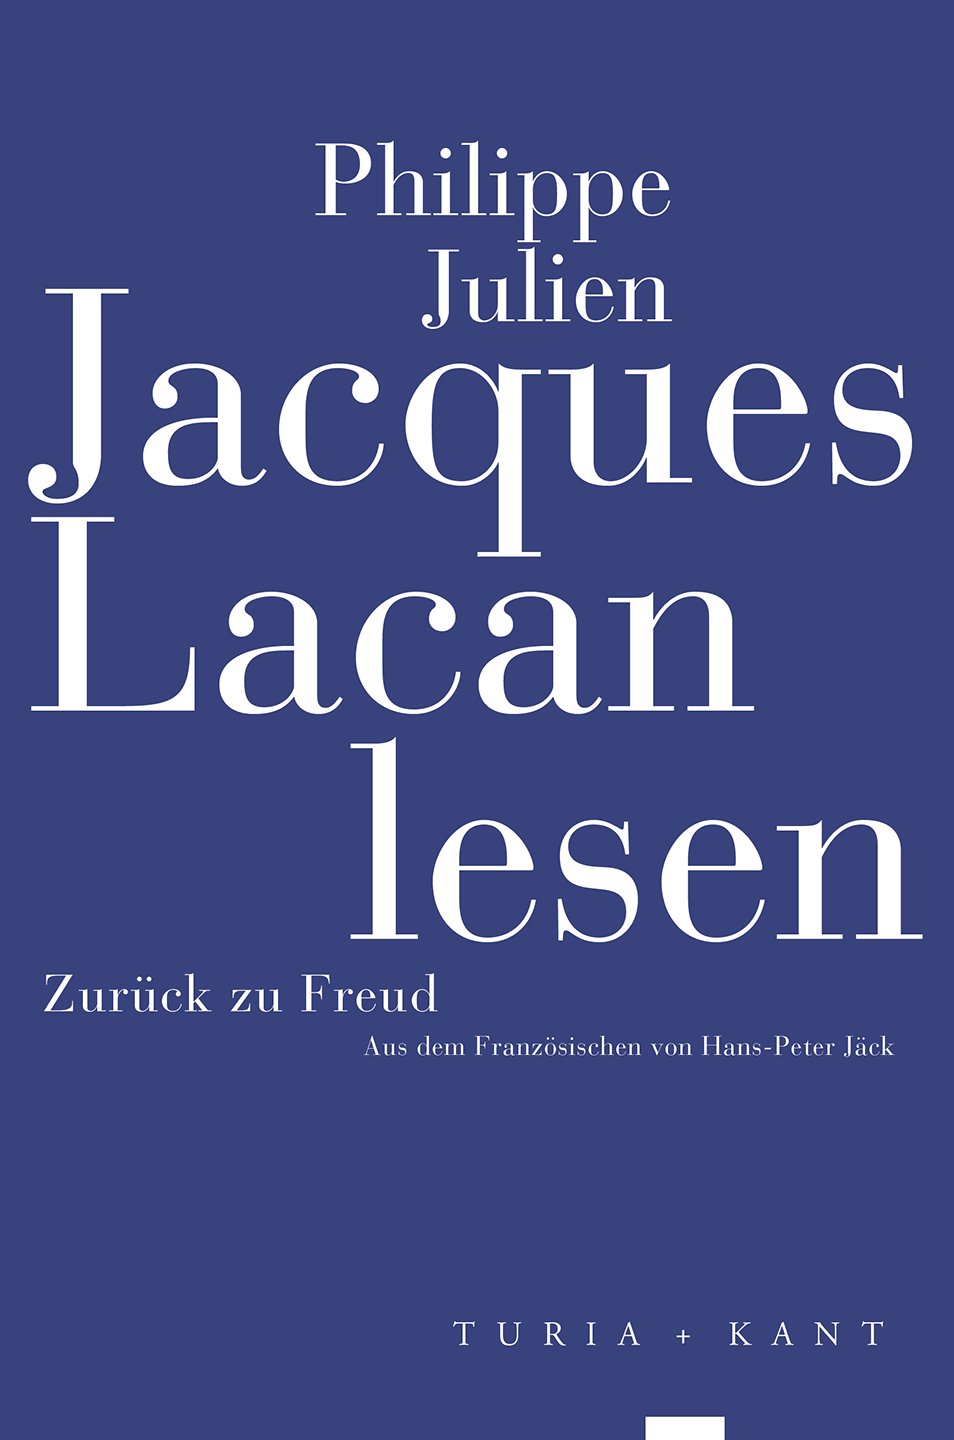 Jacques Lacan lesen